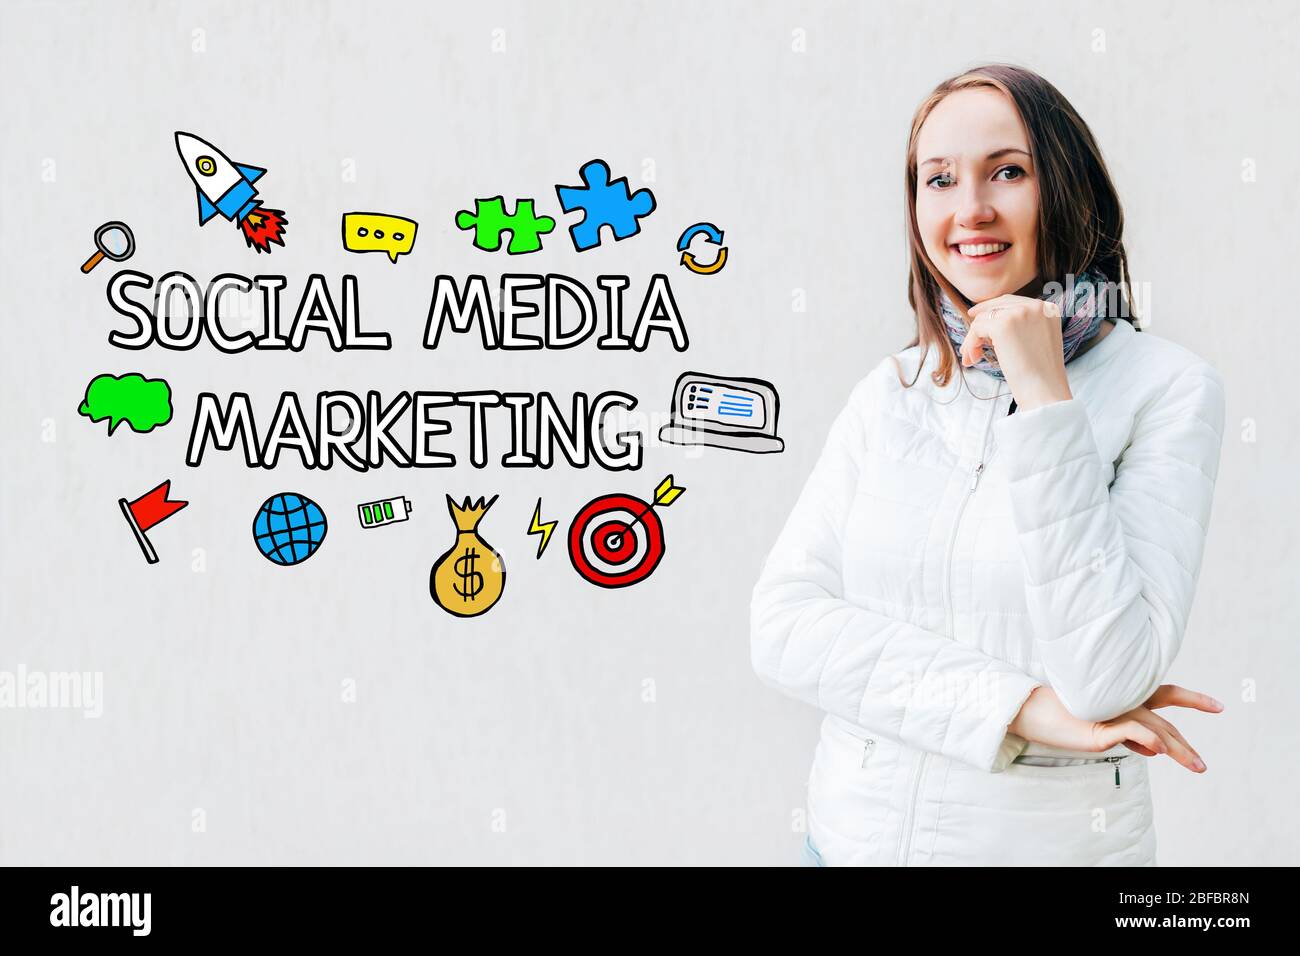 Concetto di marketing sui social media - ragazza su sfondo bianco con testo e icone. Primo piano. Foto Stock